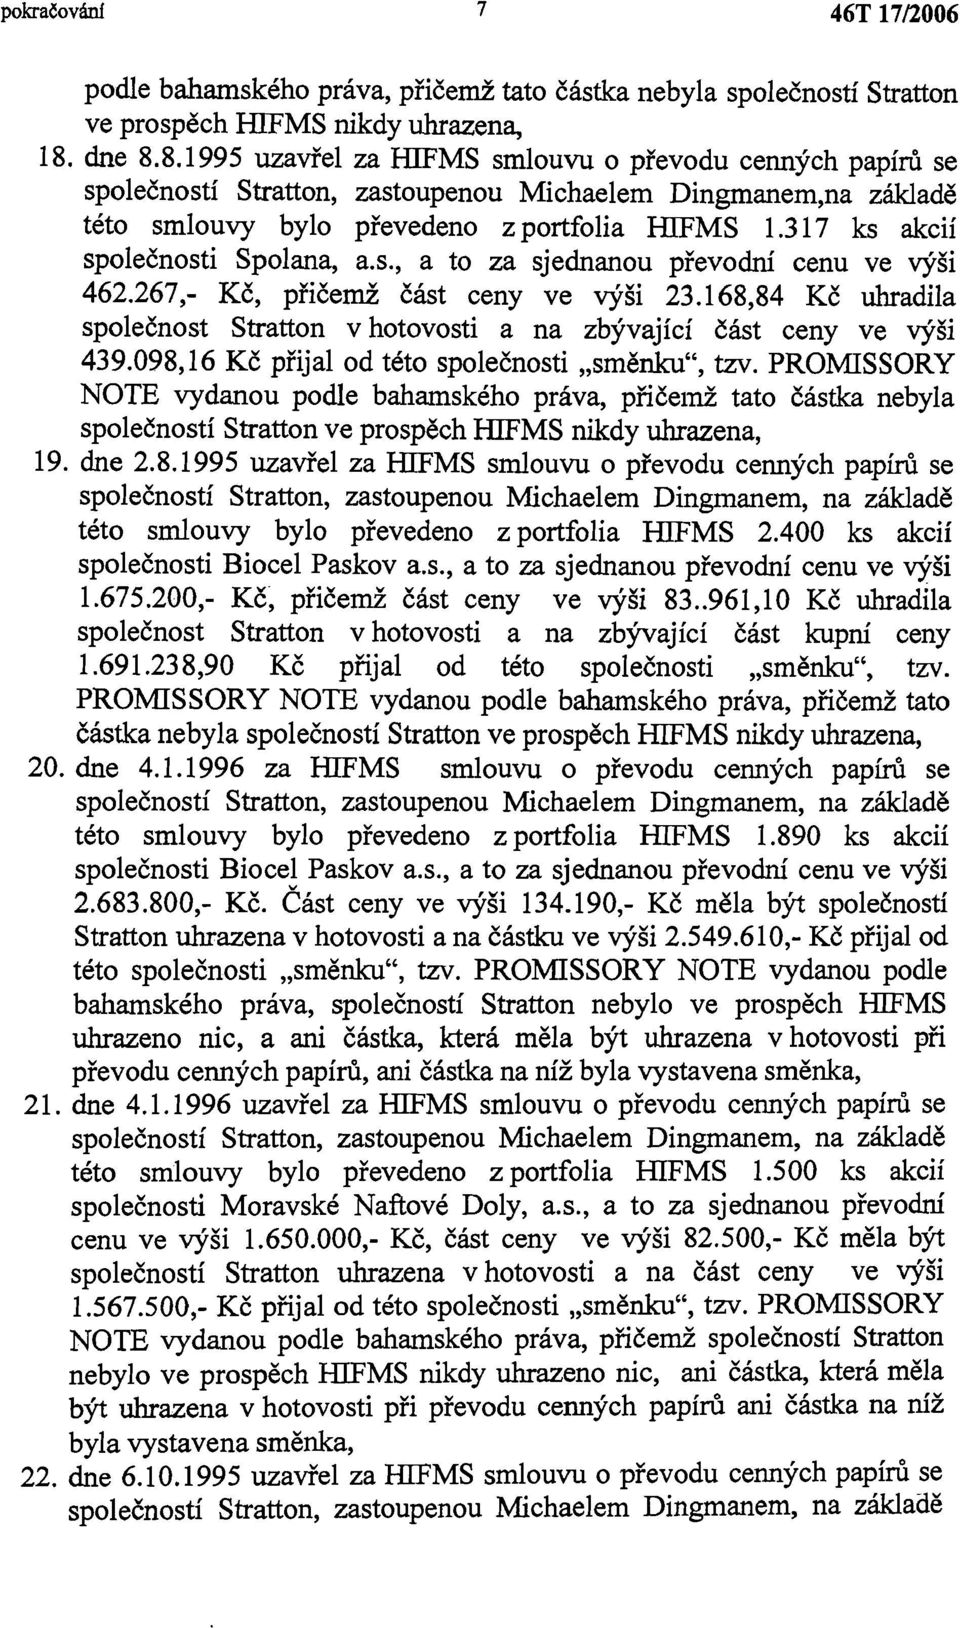 317 ks akcií společnosti Spolana, a.s., a to za sjednanou převodní cenu ve výši 462.267,- Kč, přičemž část ceny ve výši 23.